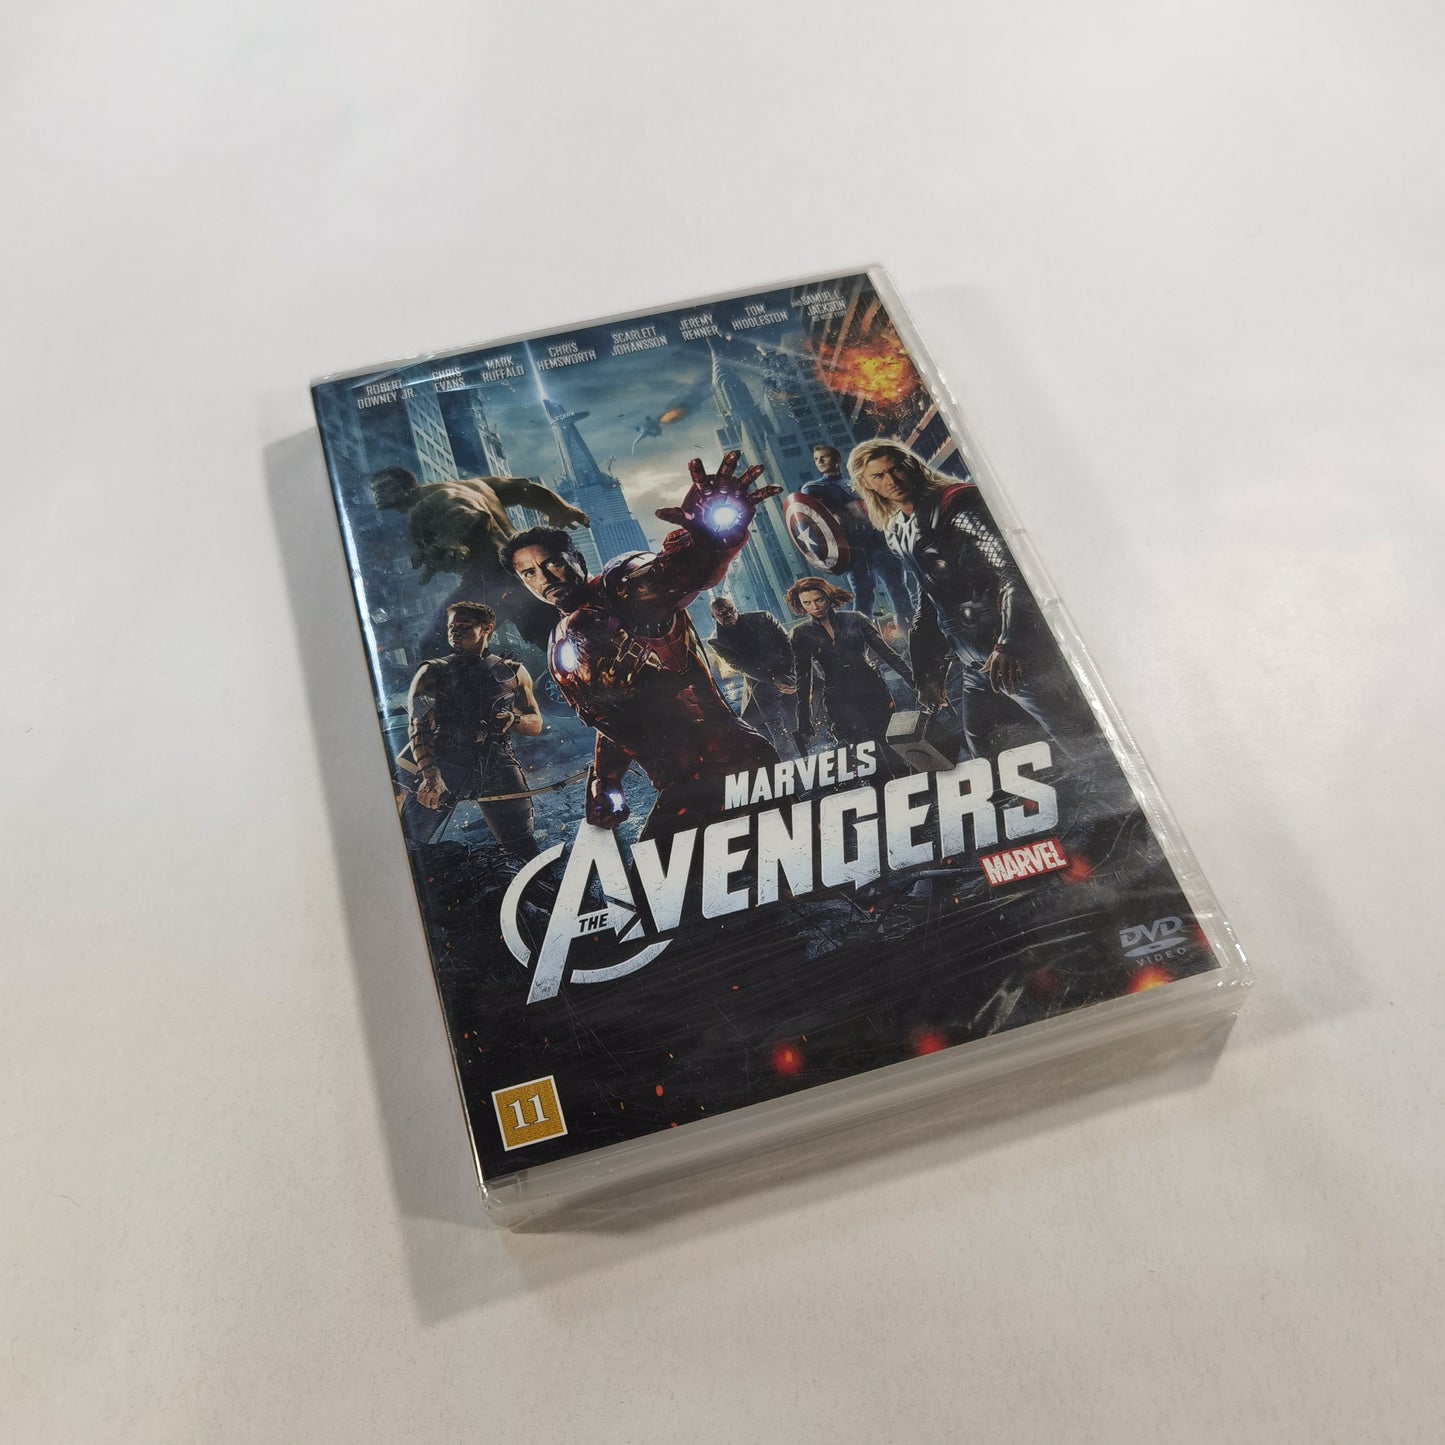 The Avengers (2012) - DVD DK NEW!